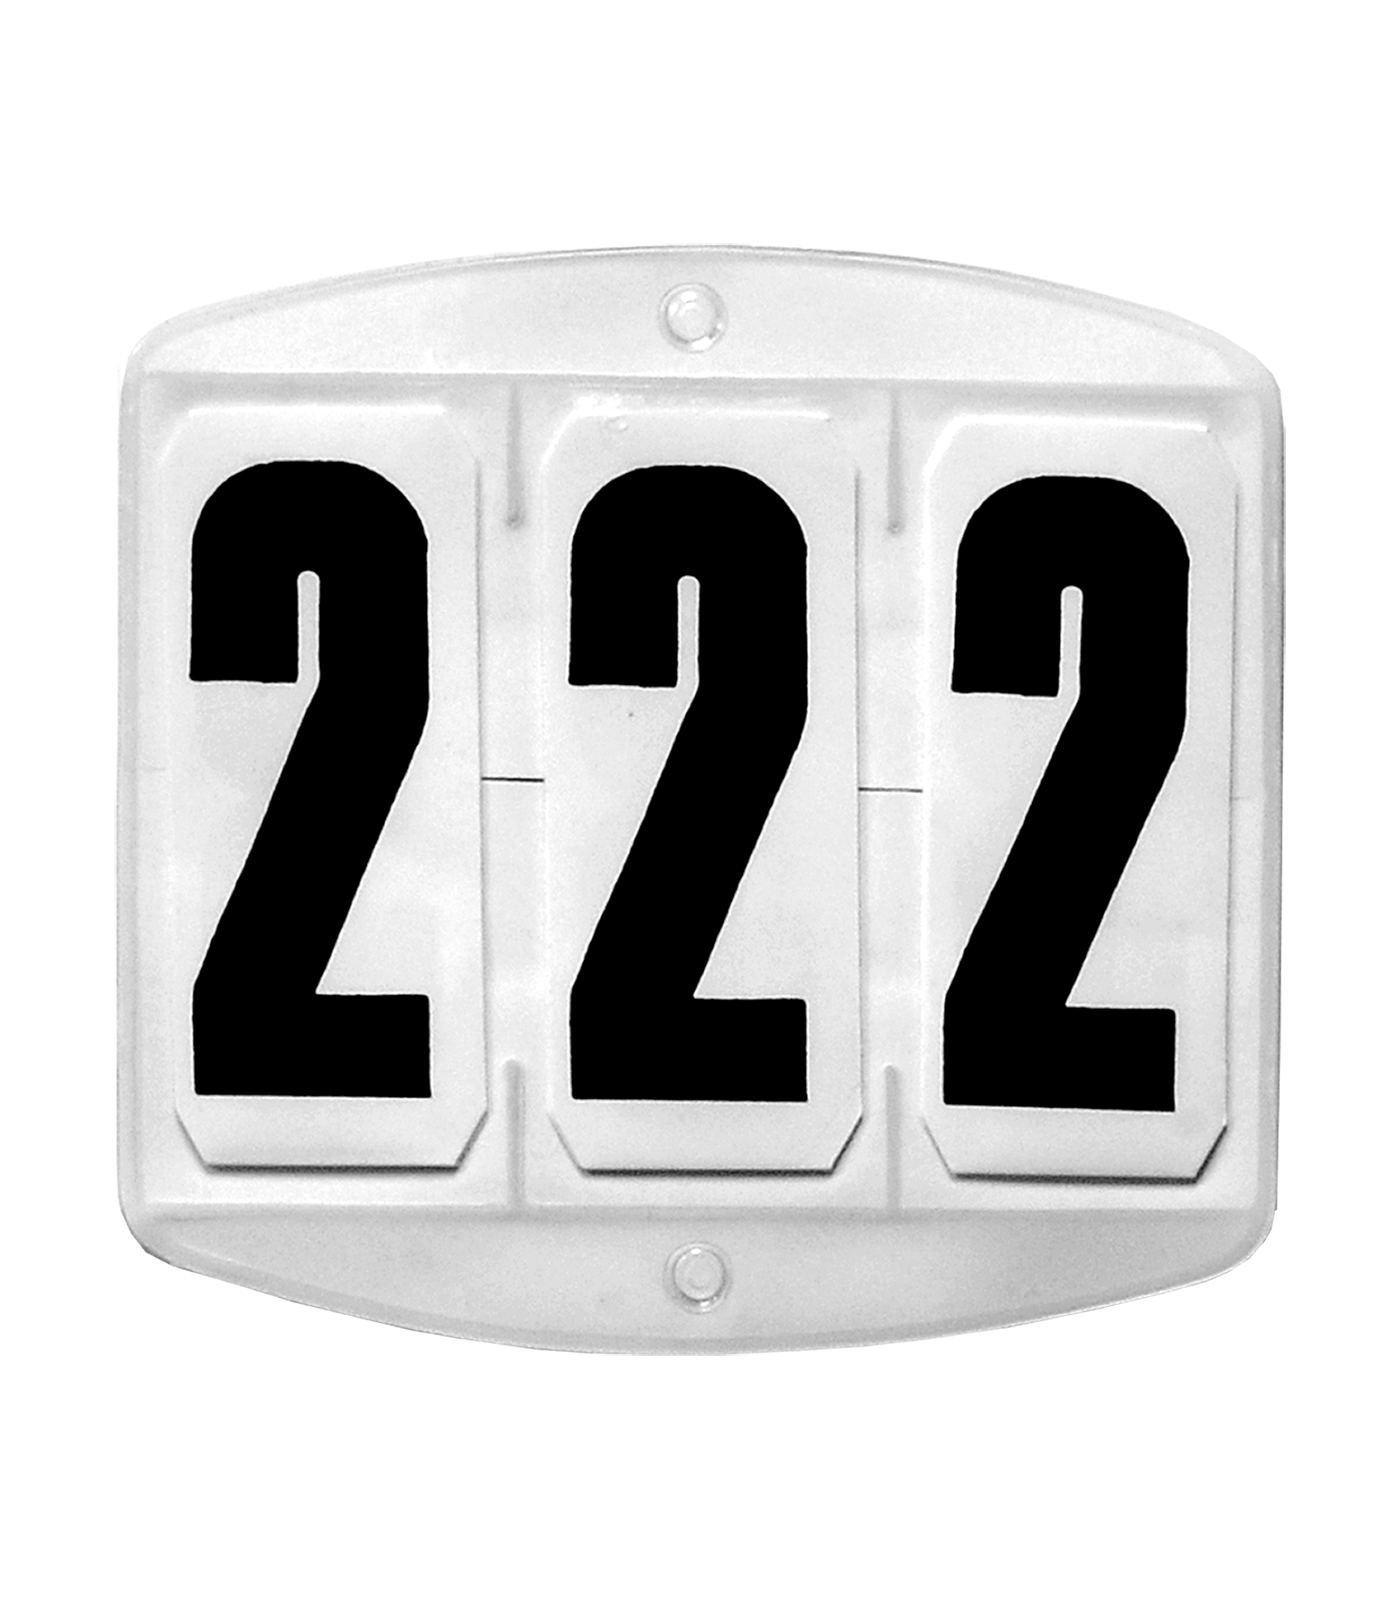 Número de salida para mantilla, rectangular, con cierre de gancho y bucle